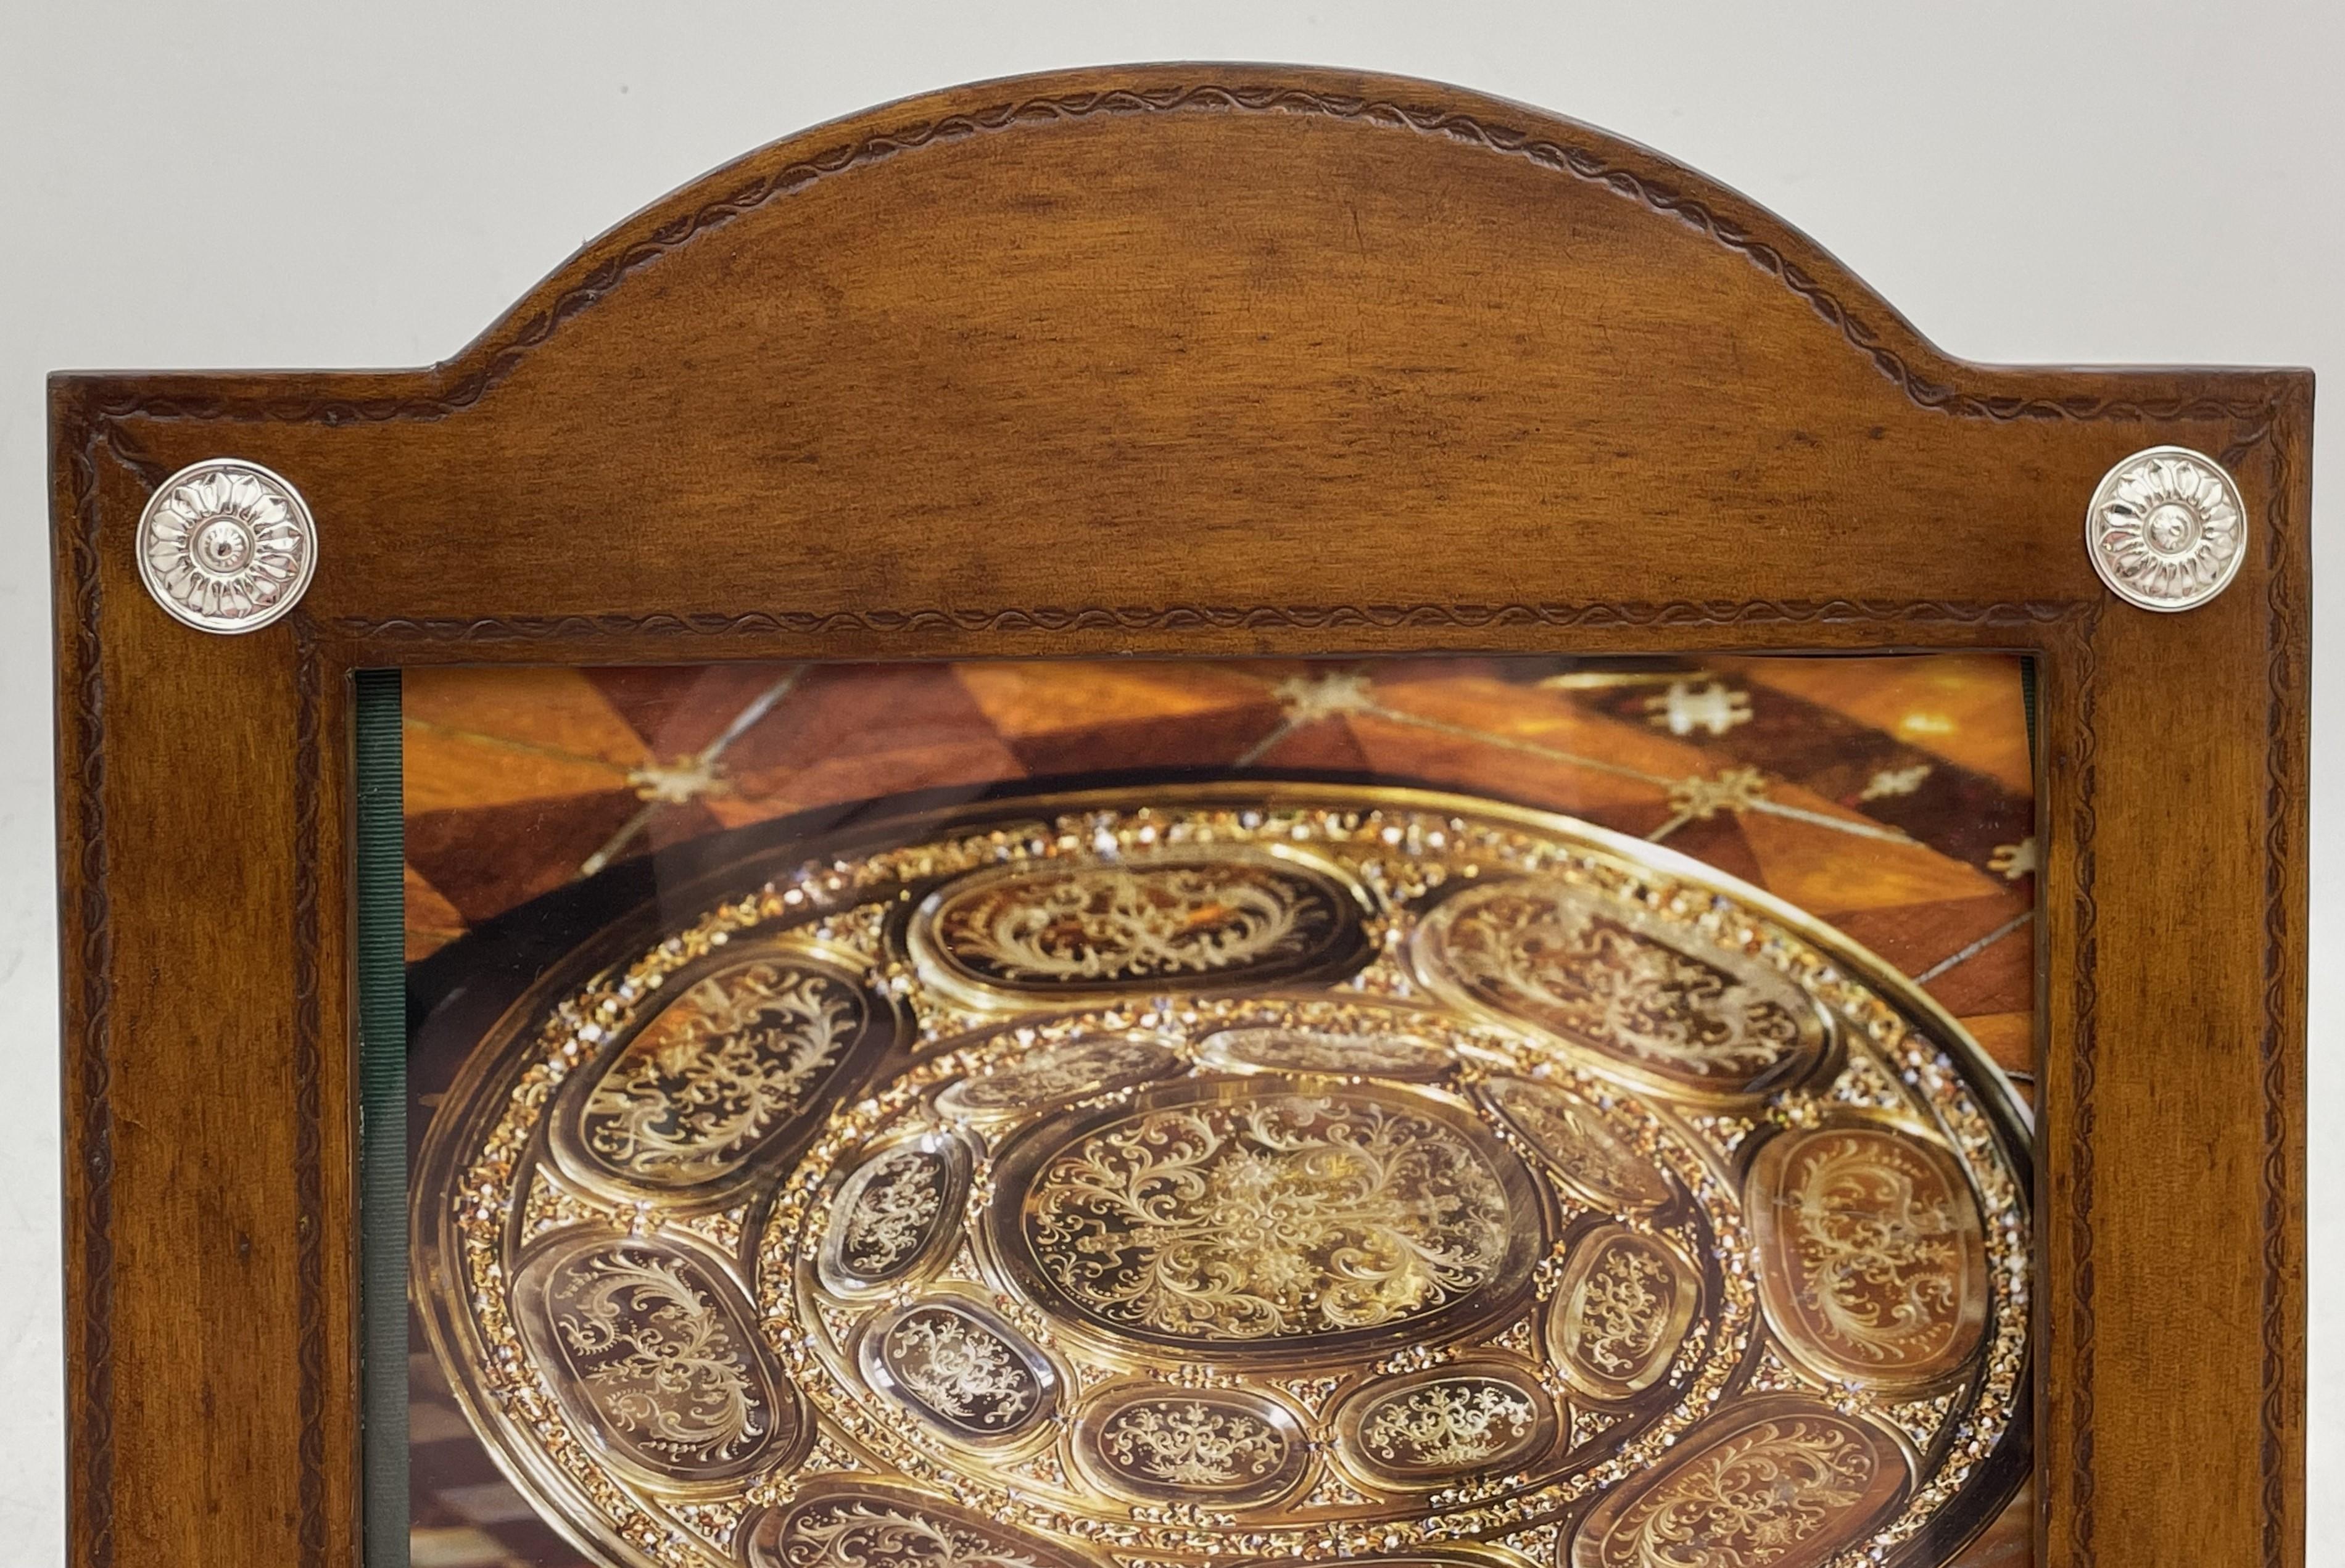 Cadre photo en cuir William Scott avec motifs floraux en argent sterling appliqués. Il mesure 12'' sur 12'' (les dimensions intérieures sont de 9'' sur 7'') et porte les poinçons indiqués. Il est en état neuf et est vendu dans sa pochette d'origine.